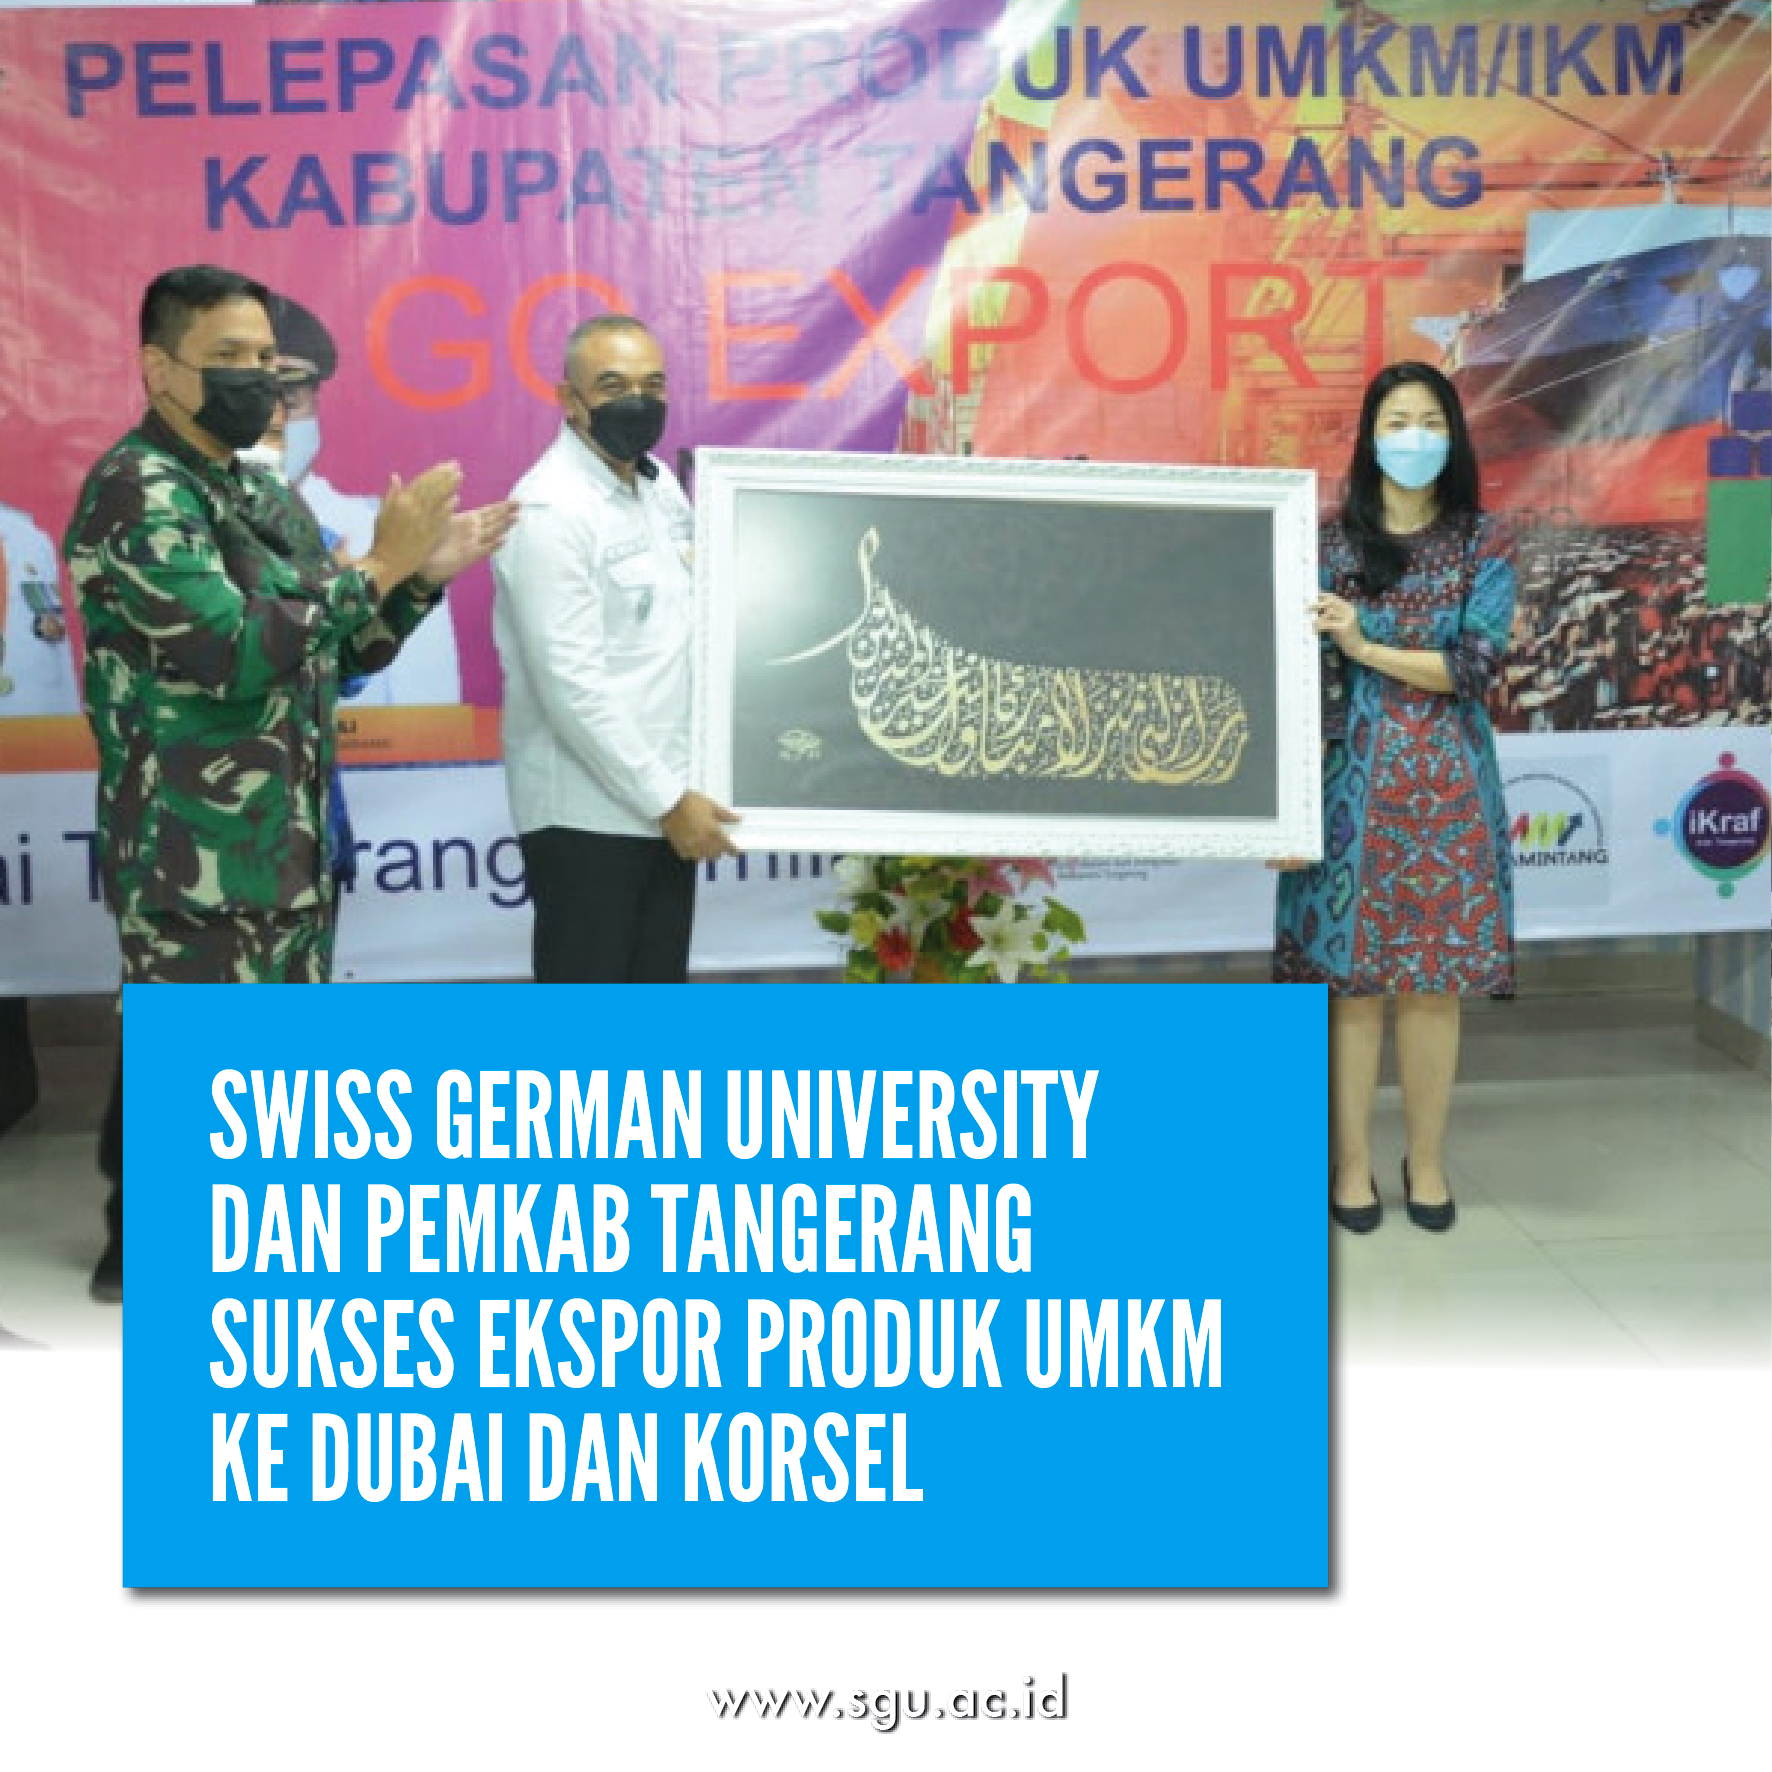 Swiss German University dan Pemkab Tangerang Sukses Ekspor Produk UMKM ke Dubai dan Korsel